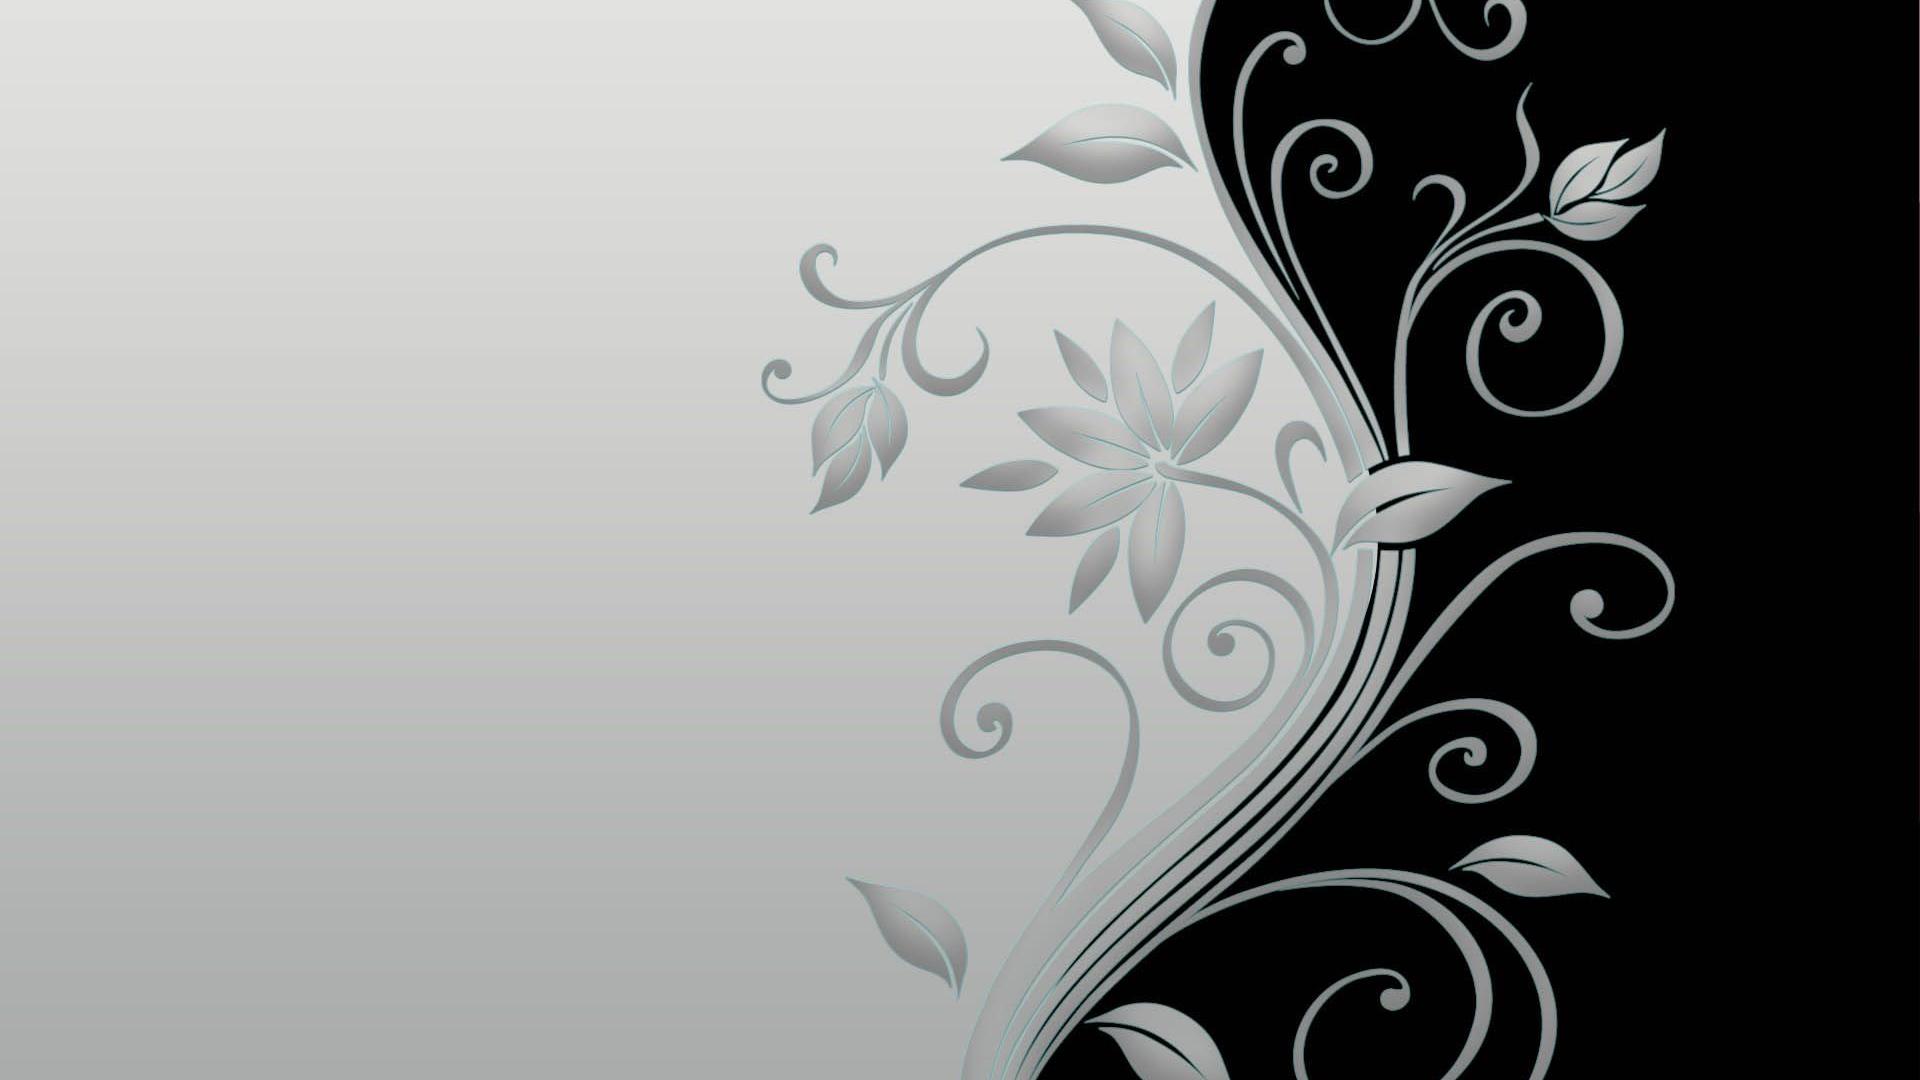 48+] Black and White Floral Wallpaper - WallpaperSafari